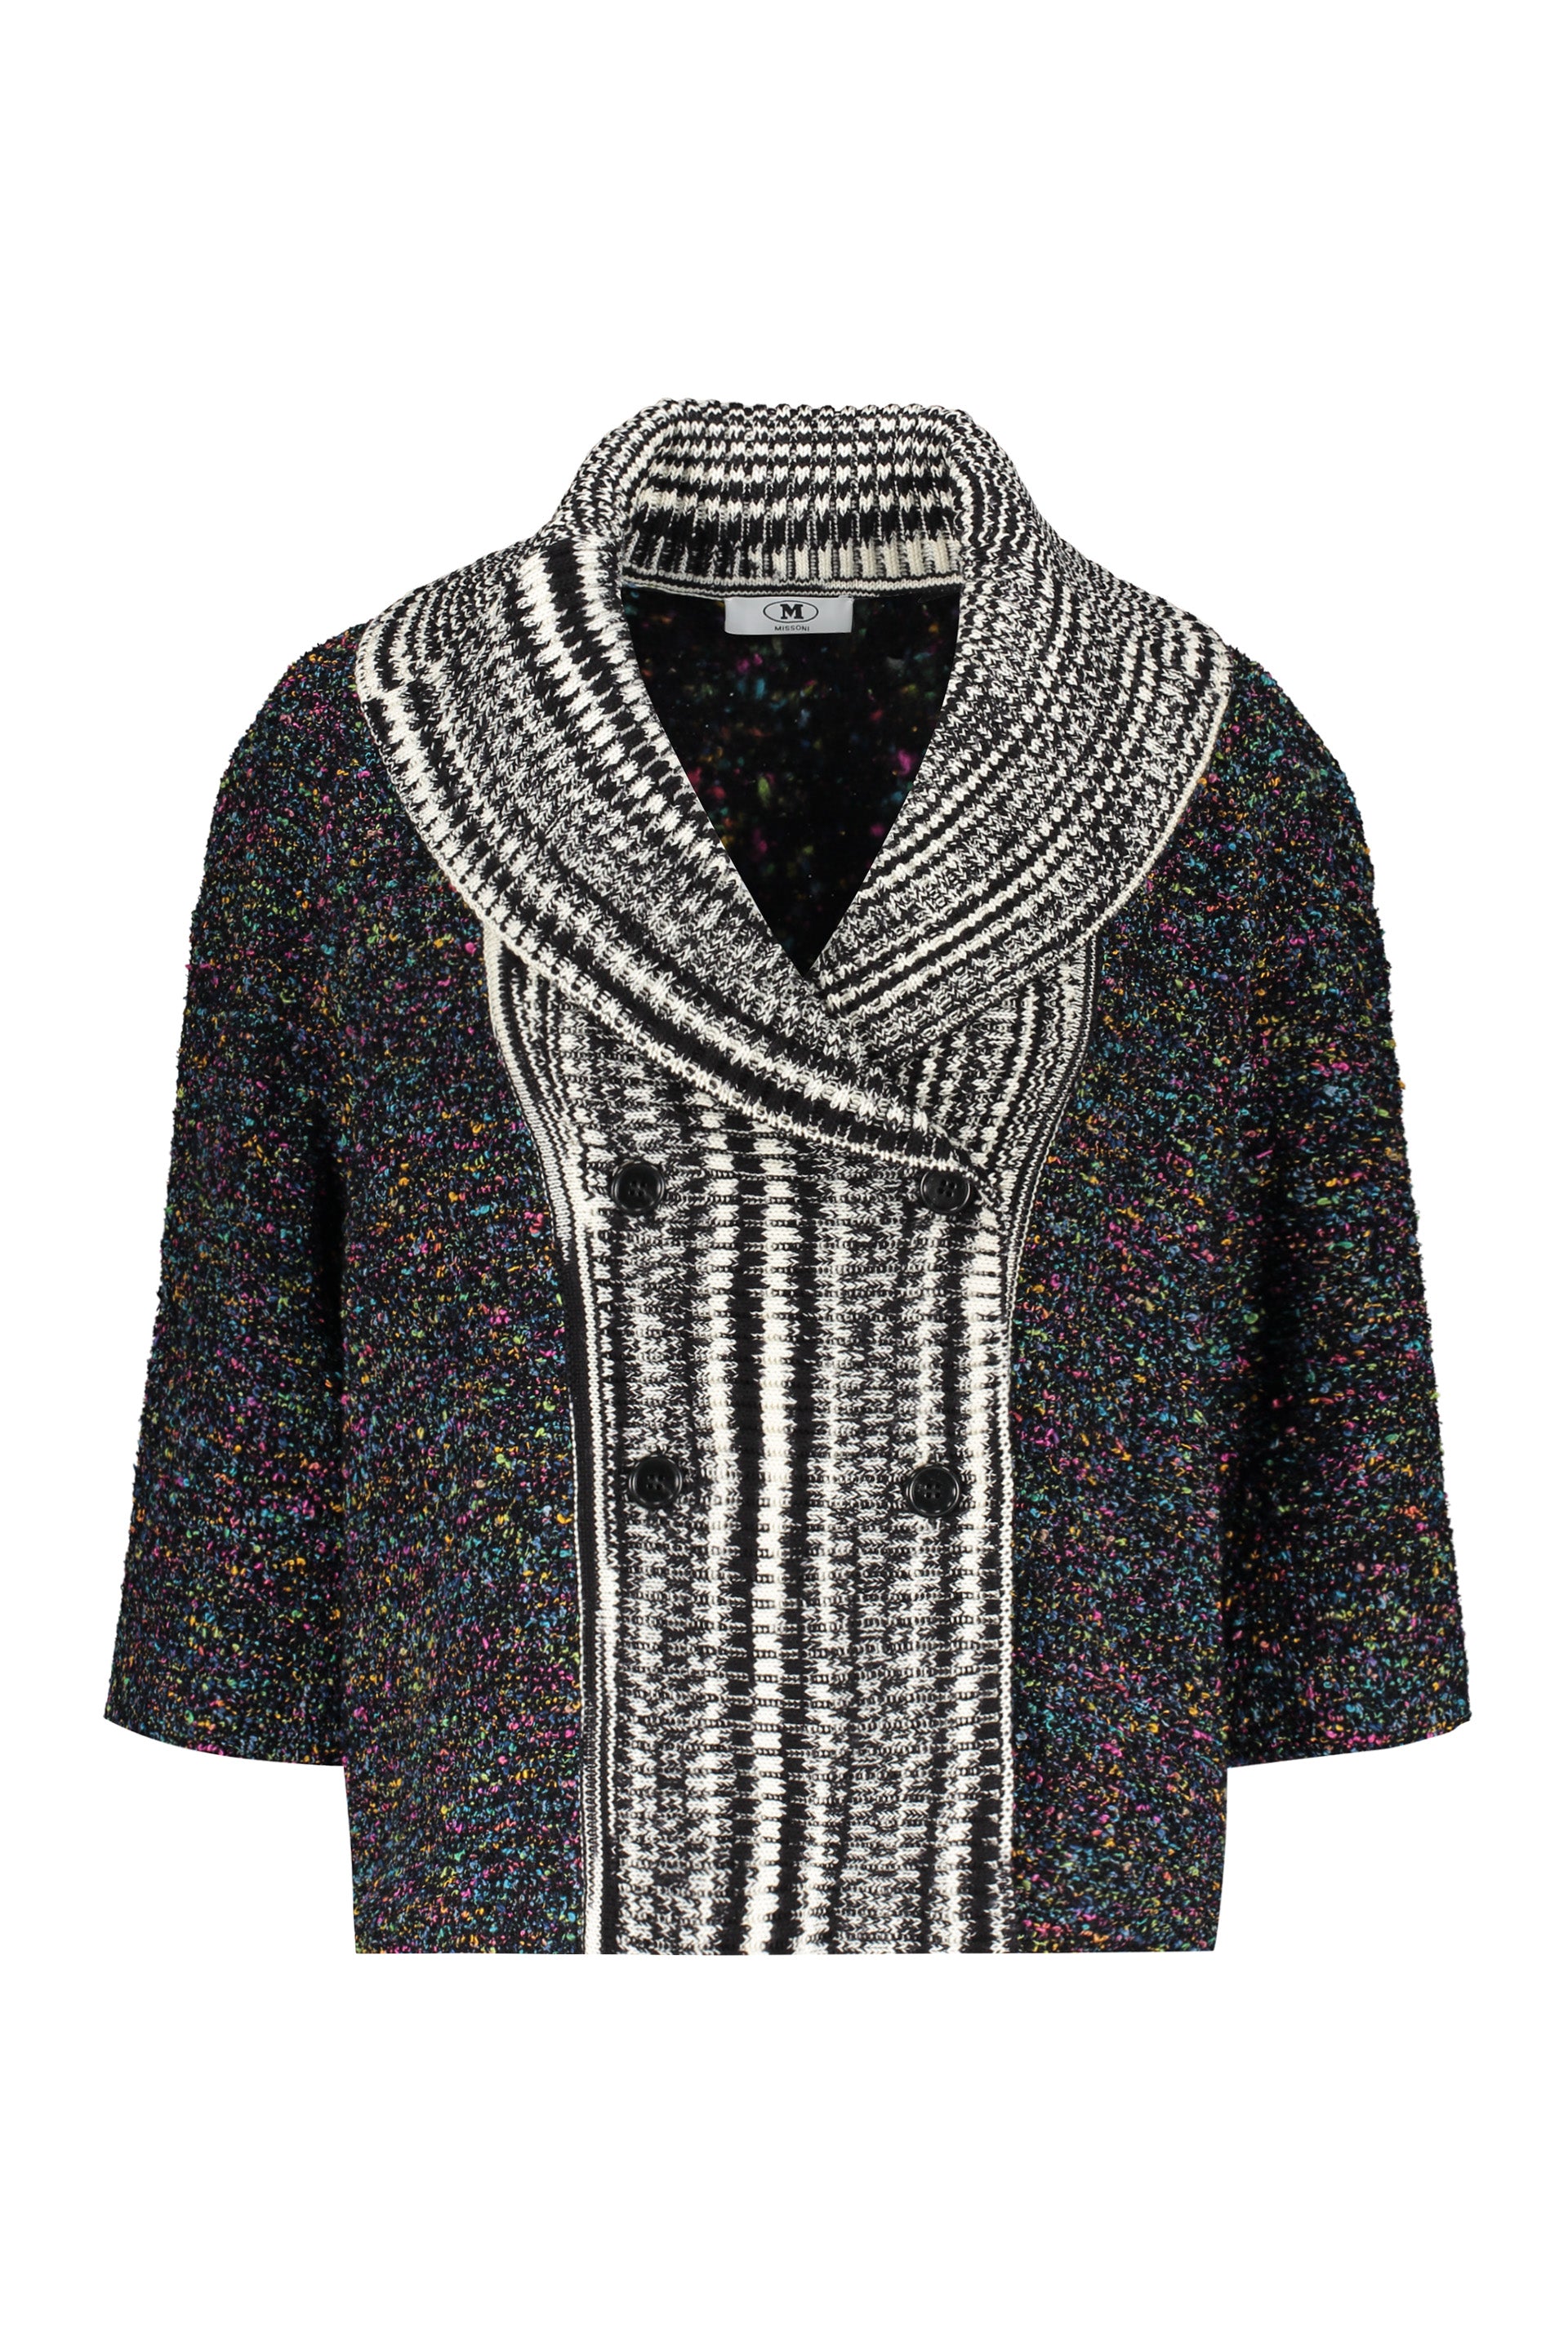 Wool-cotton blend blazer